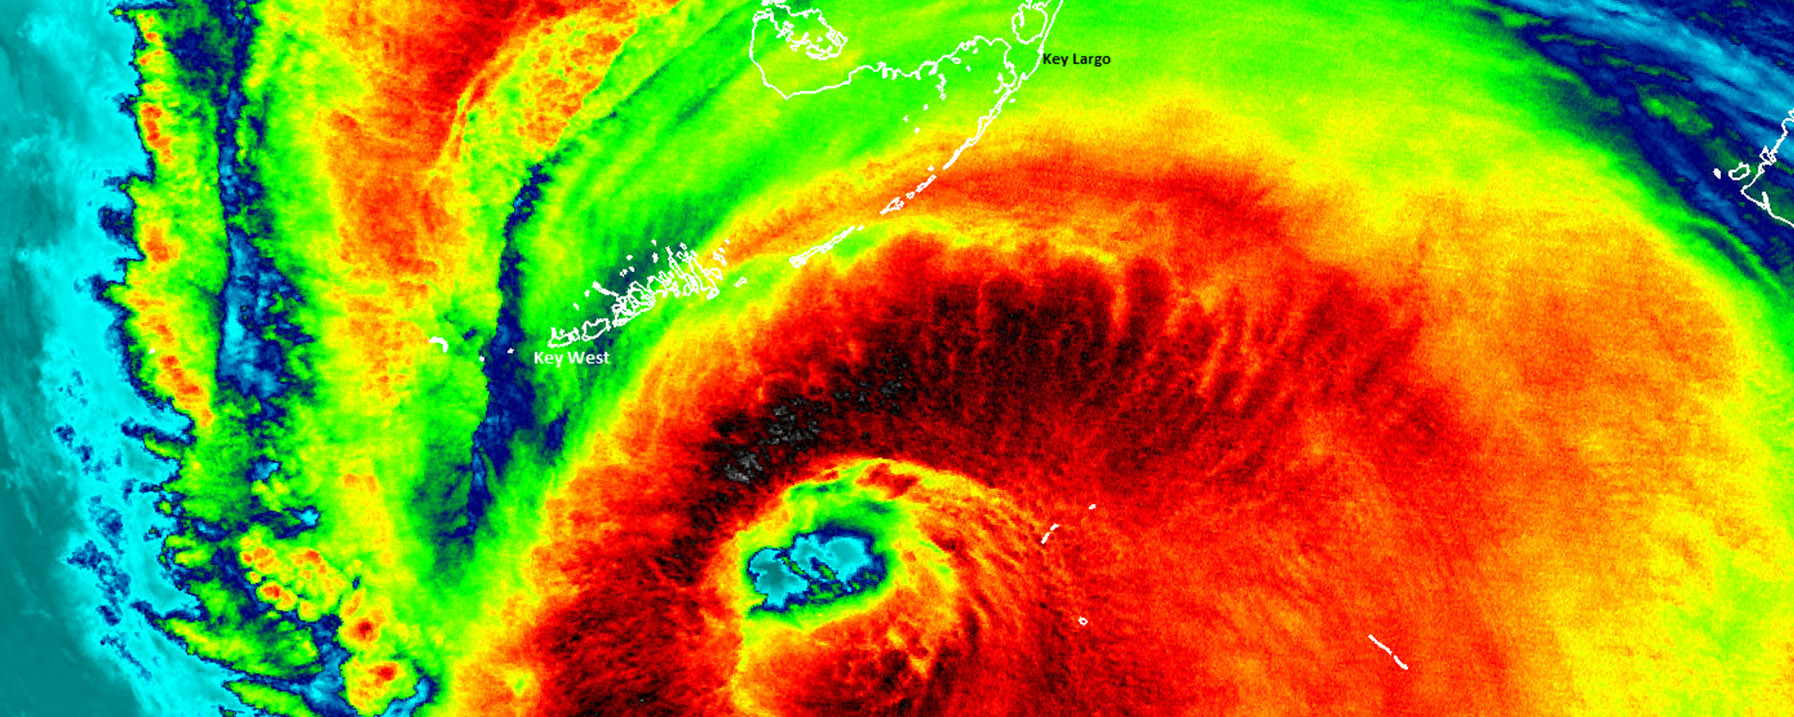 Satellite Image of Hurricane Irma